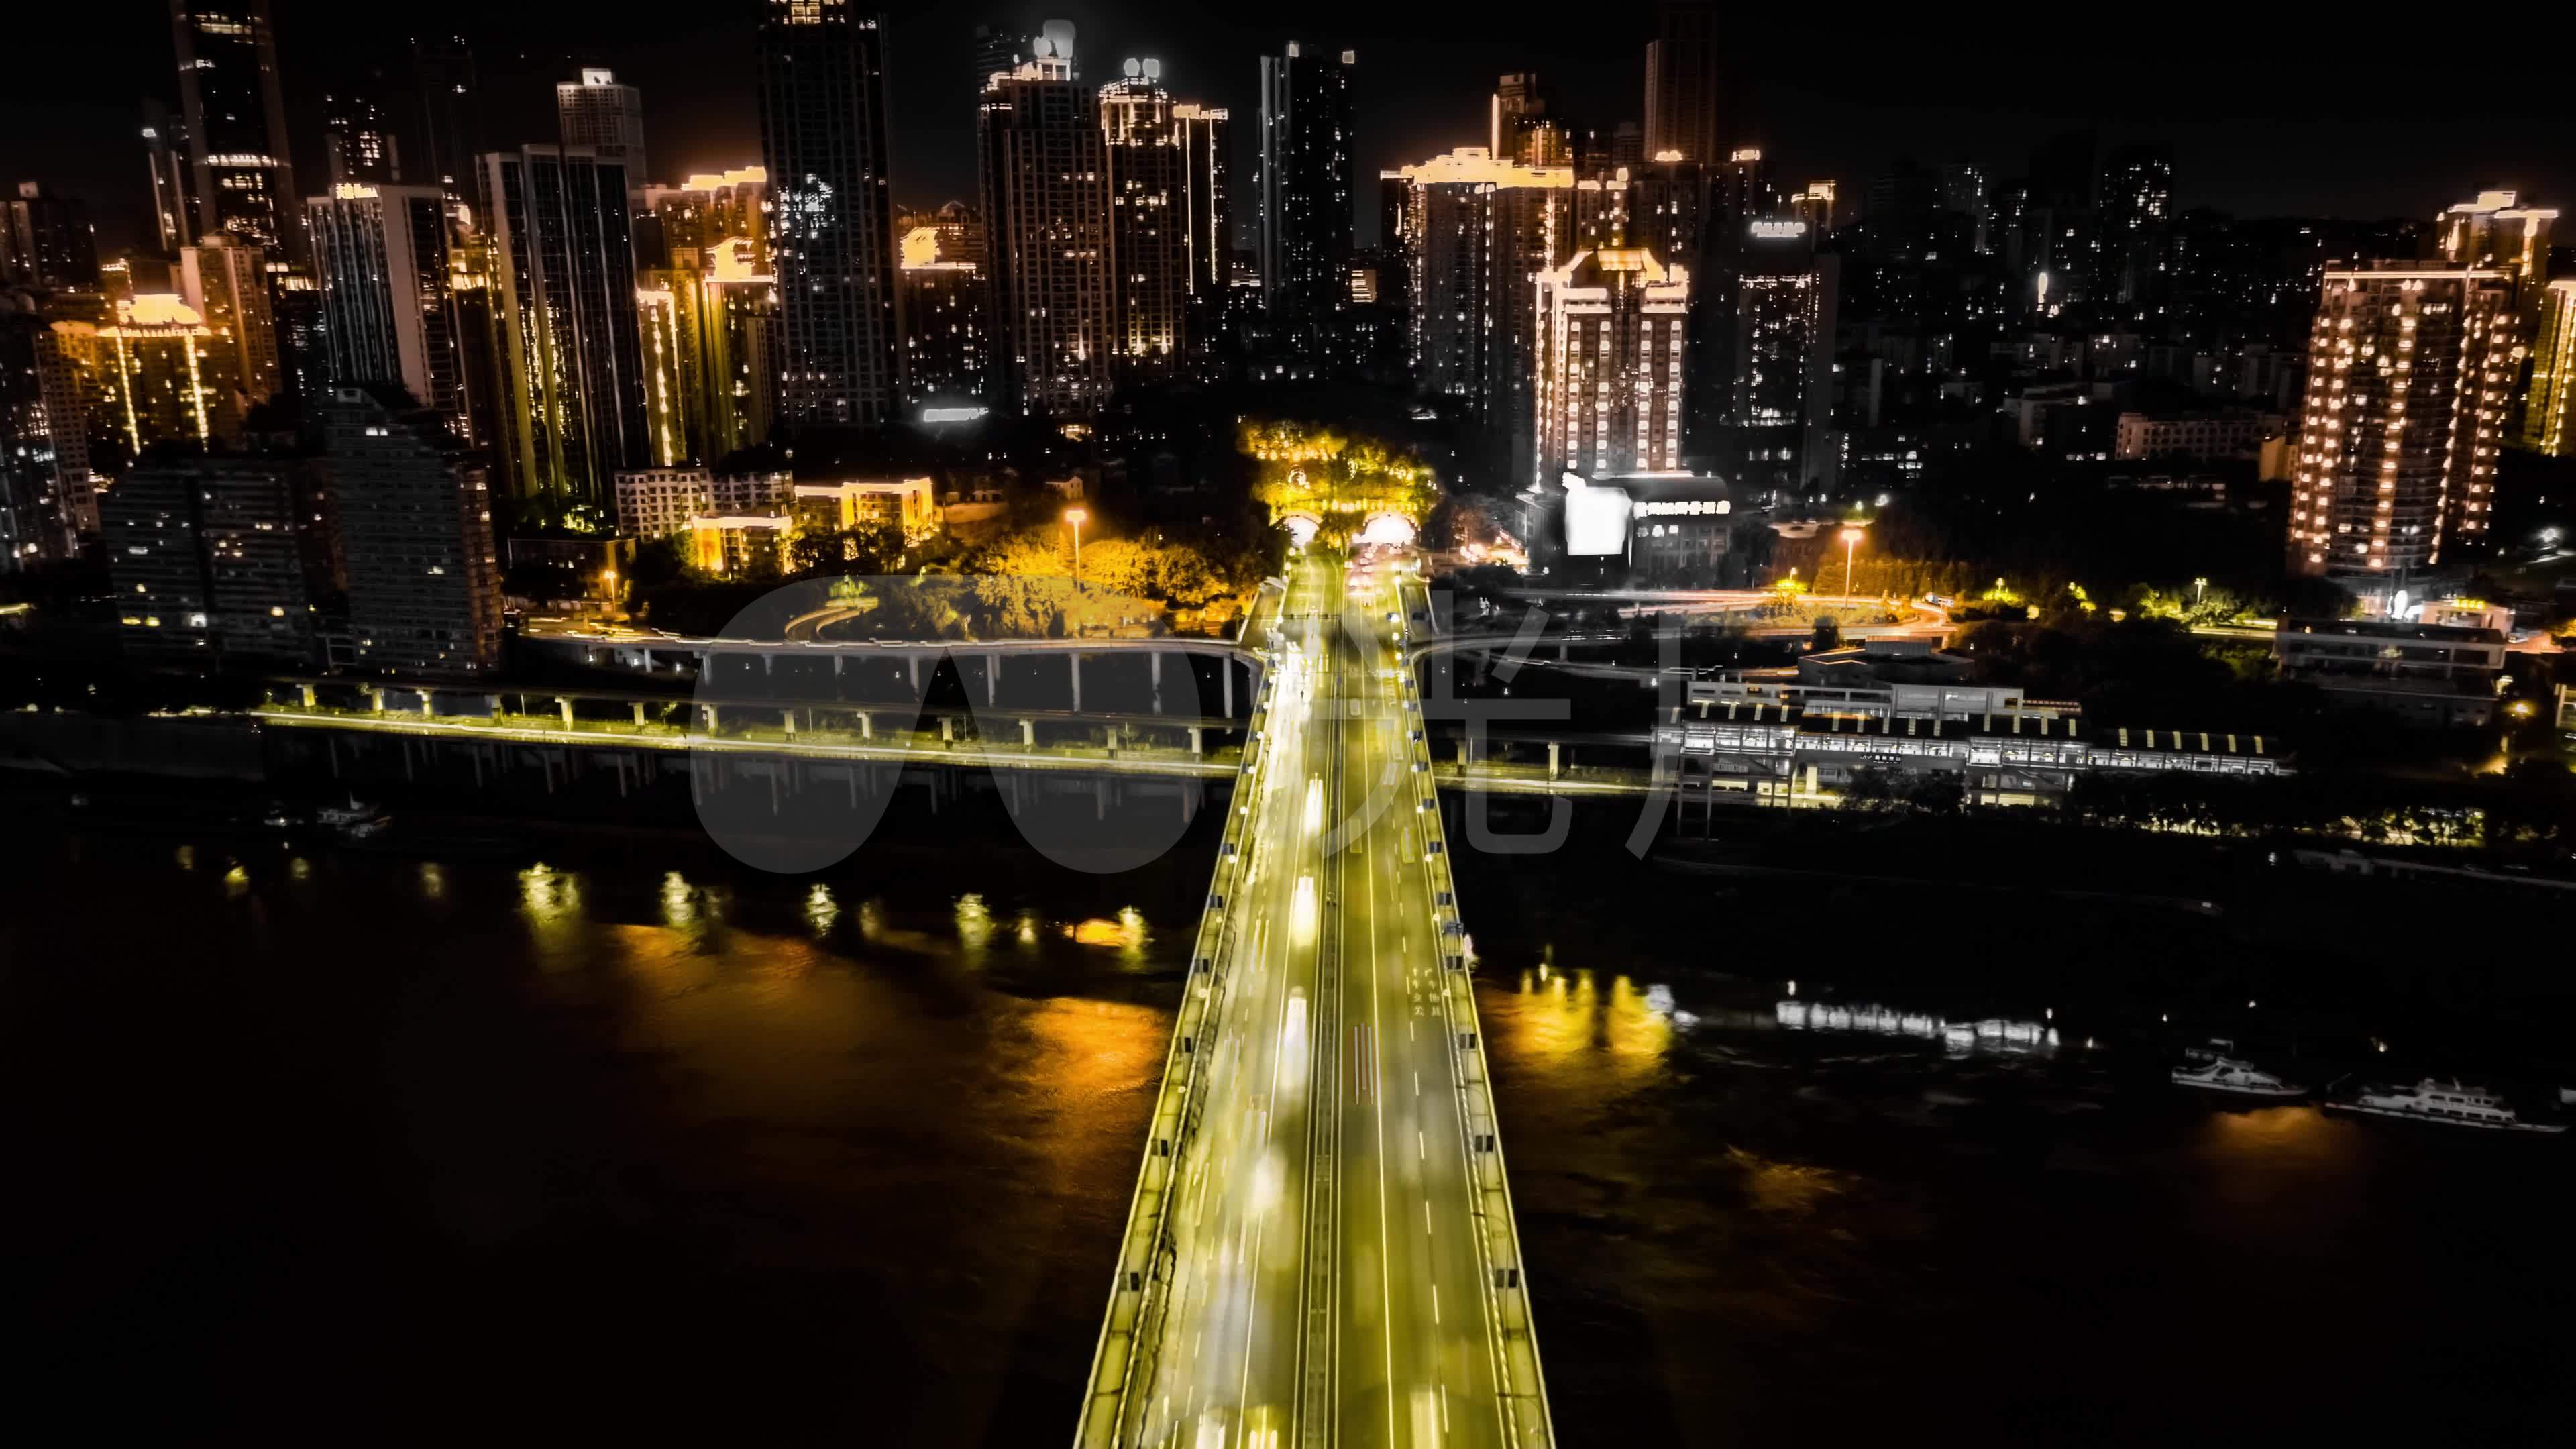 重庆夜景 洪崖洞 黄花园大桥 - Pixabay上的免费照片 - Pixabay